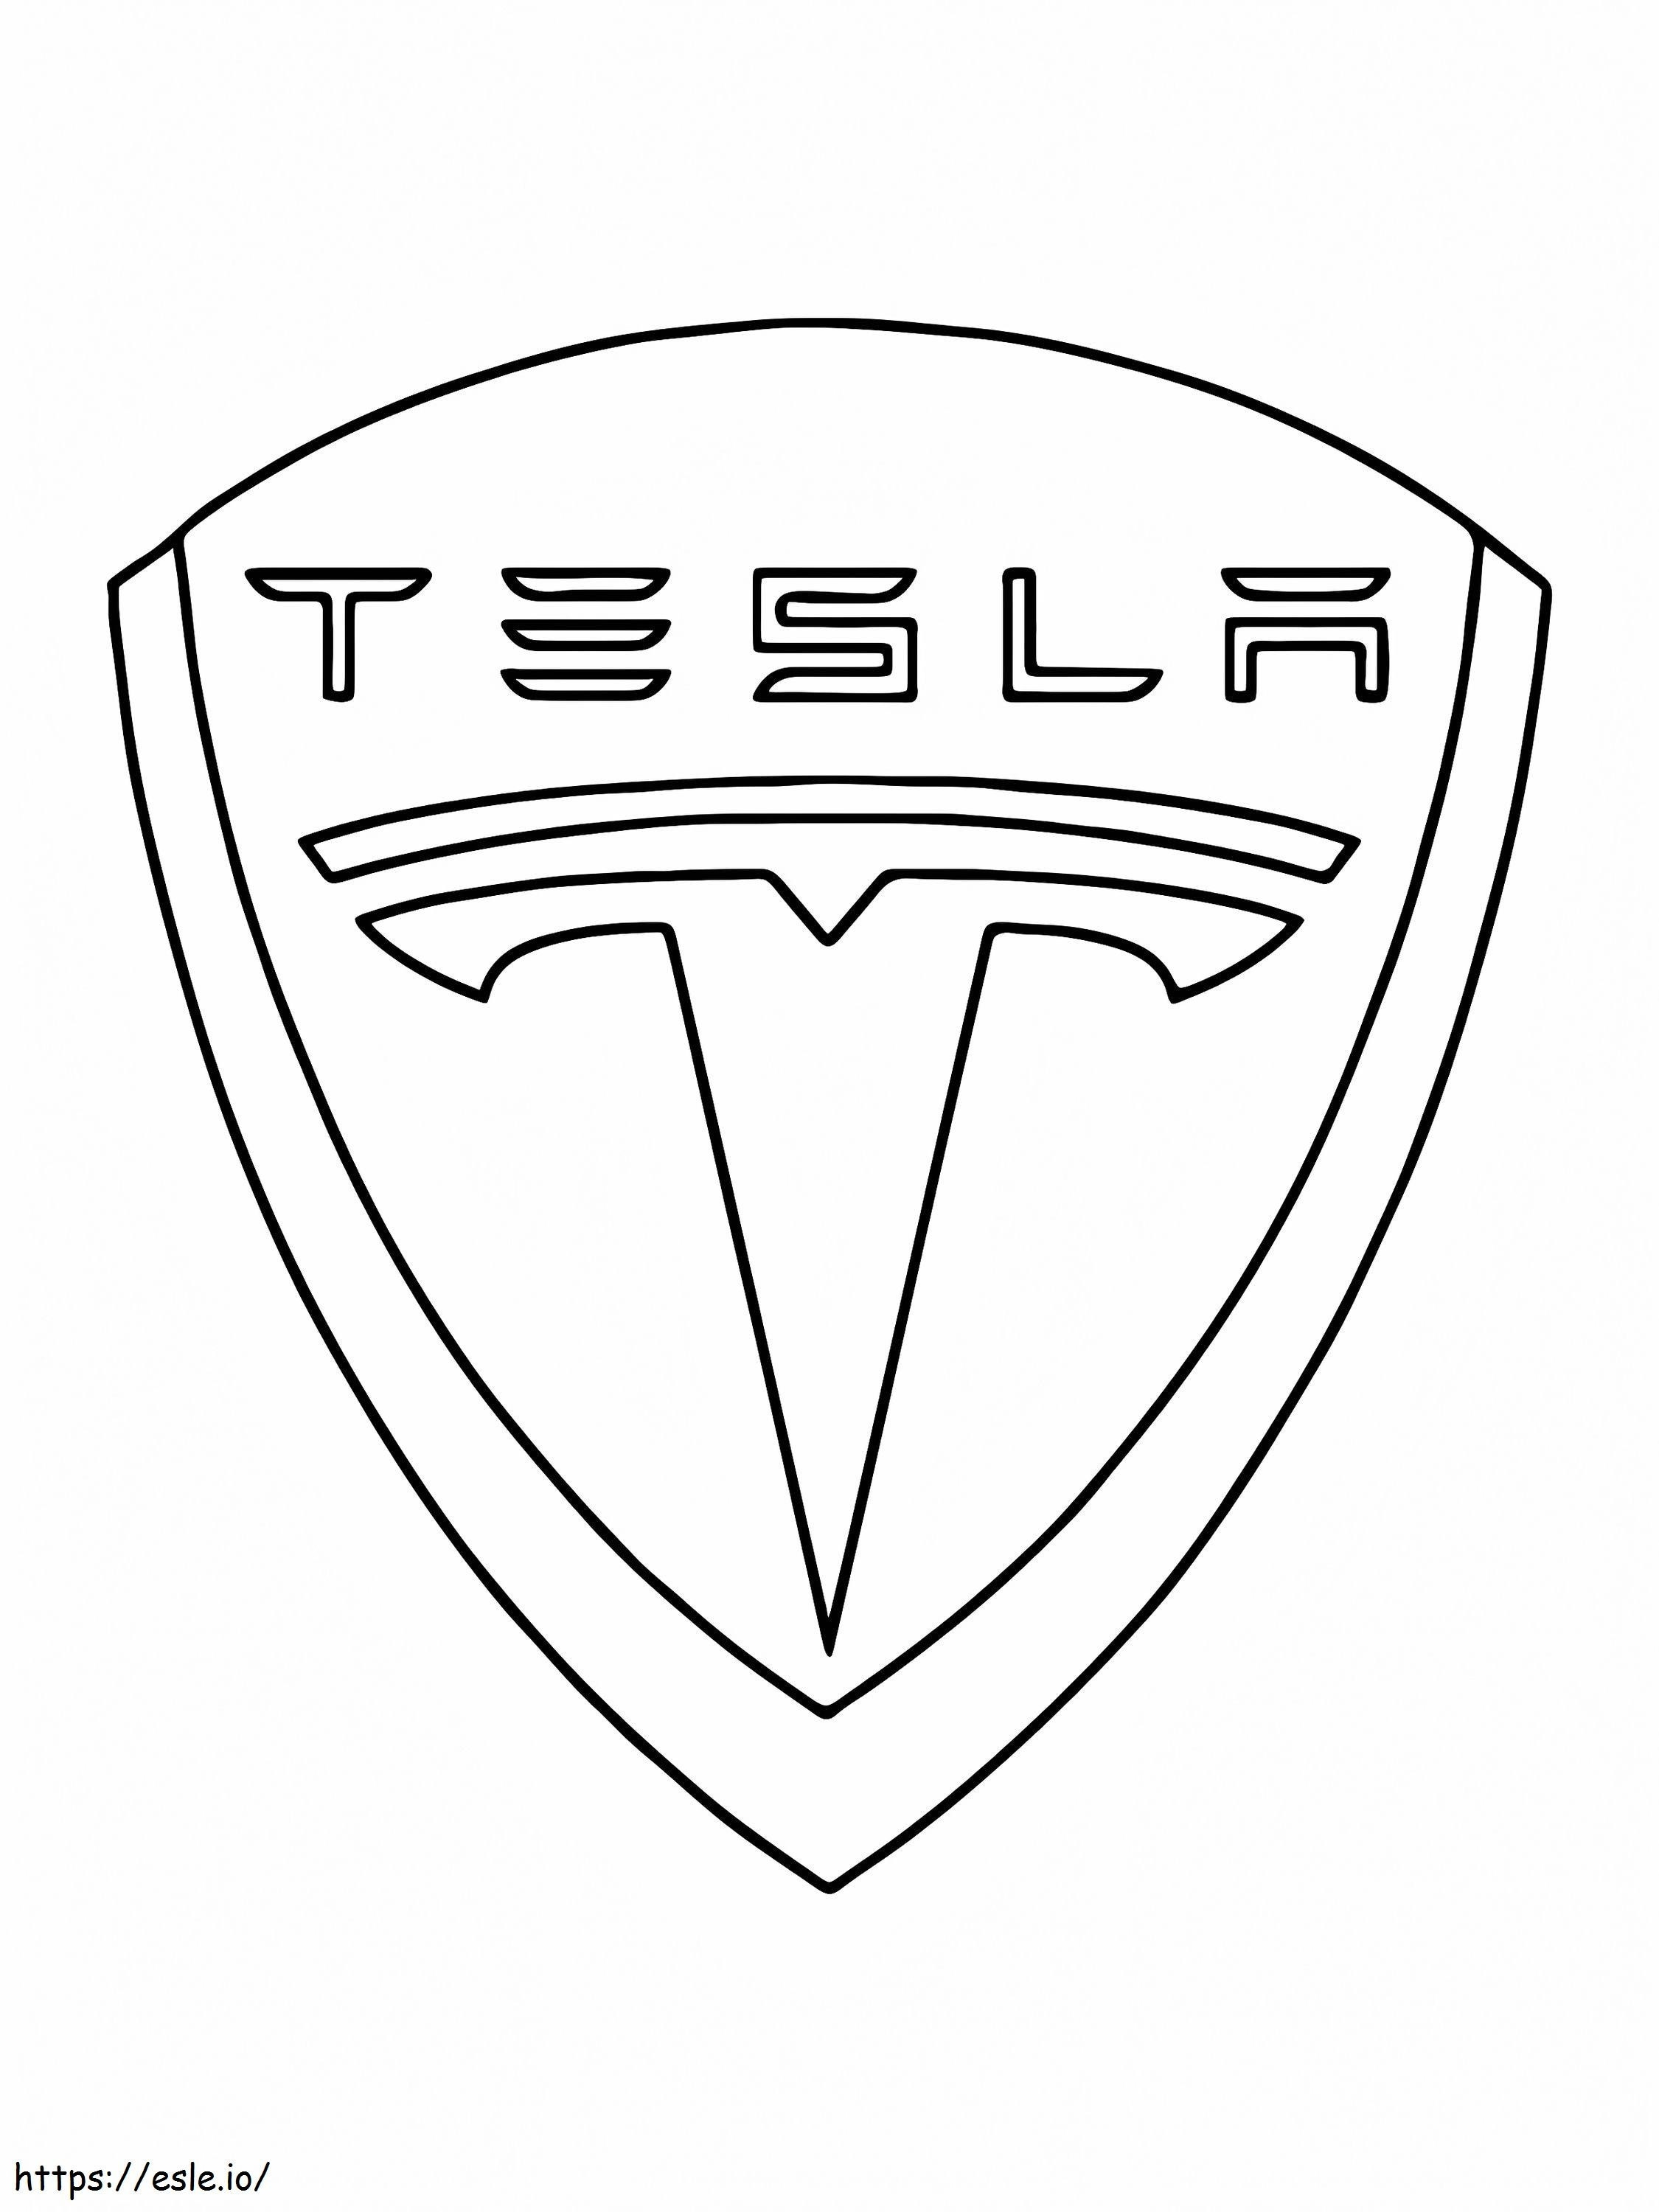 Marchio dell'automobile di Tesla da colorare